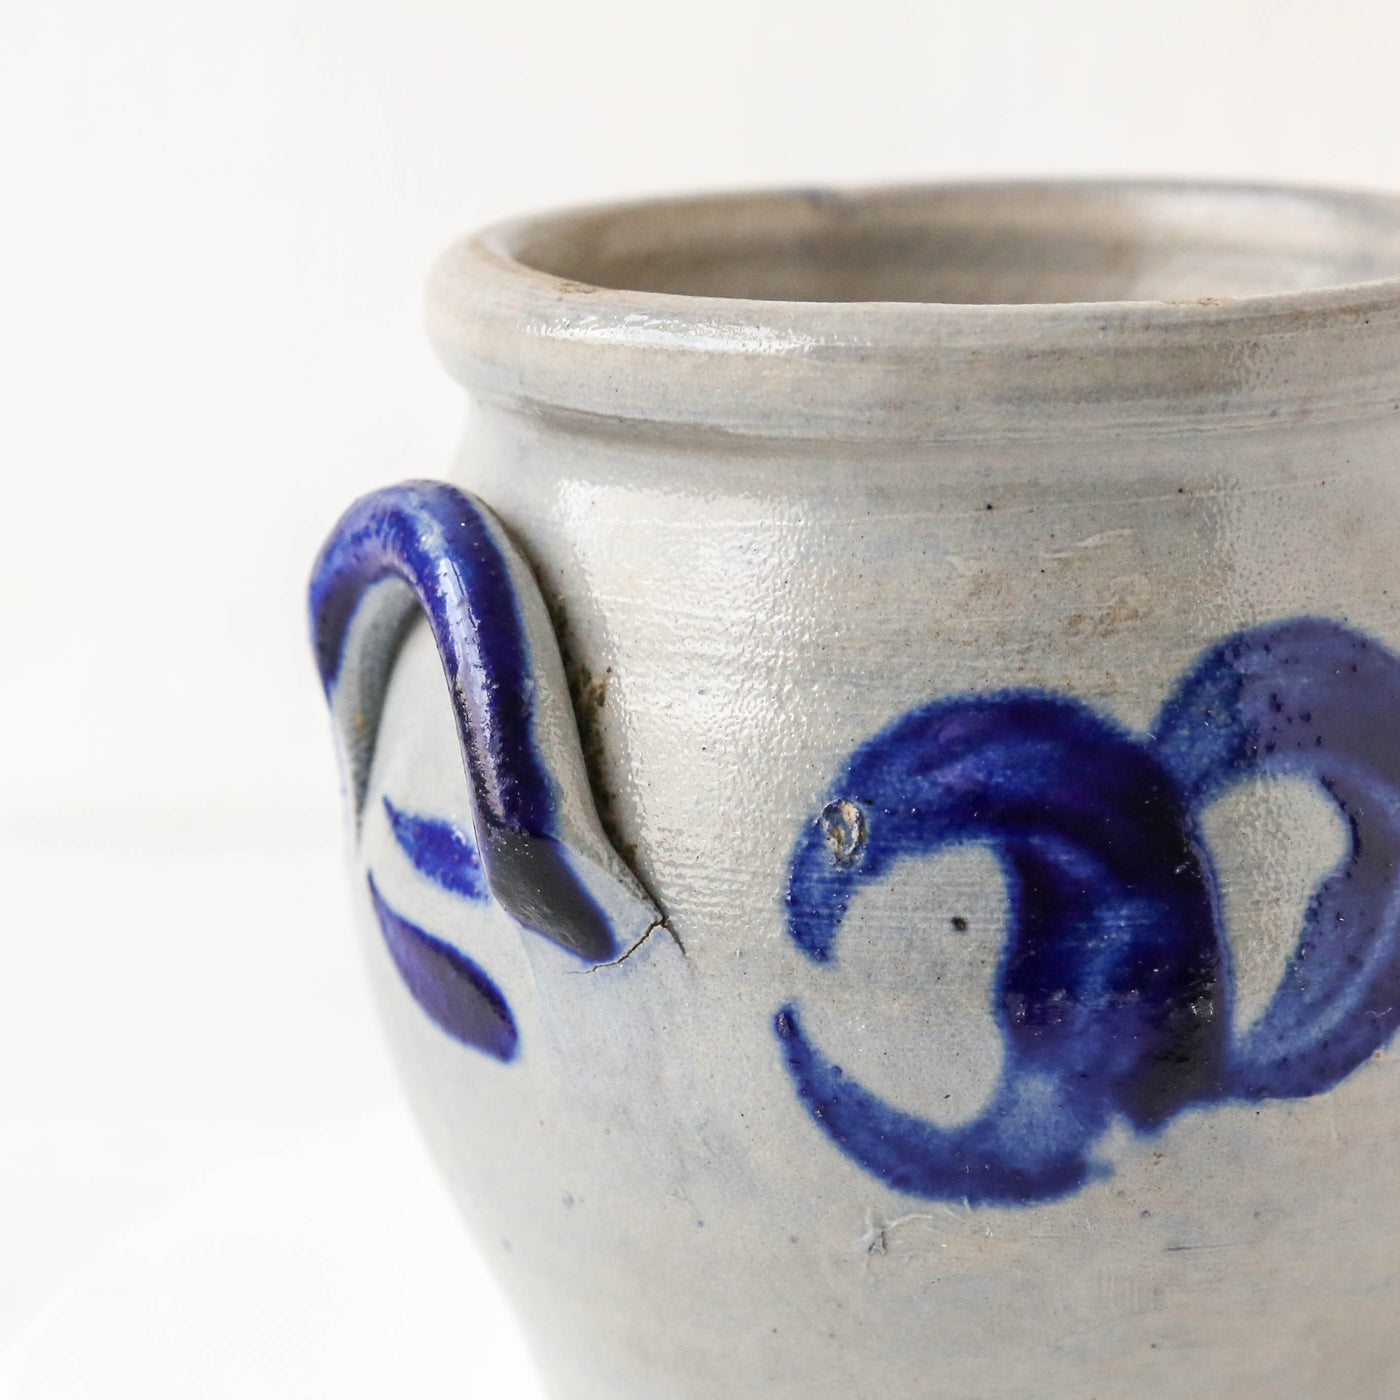 Vintage Stoneware Blue Tone Pot - Batch A - Number 1